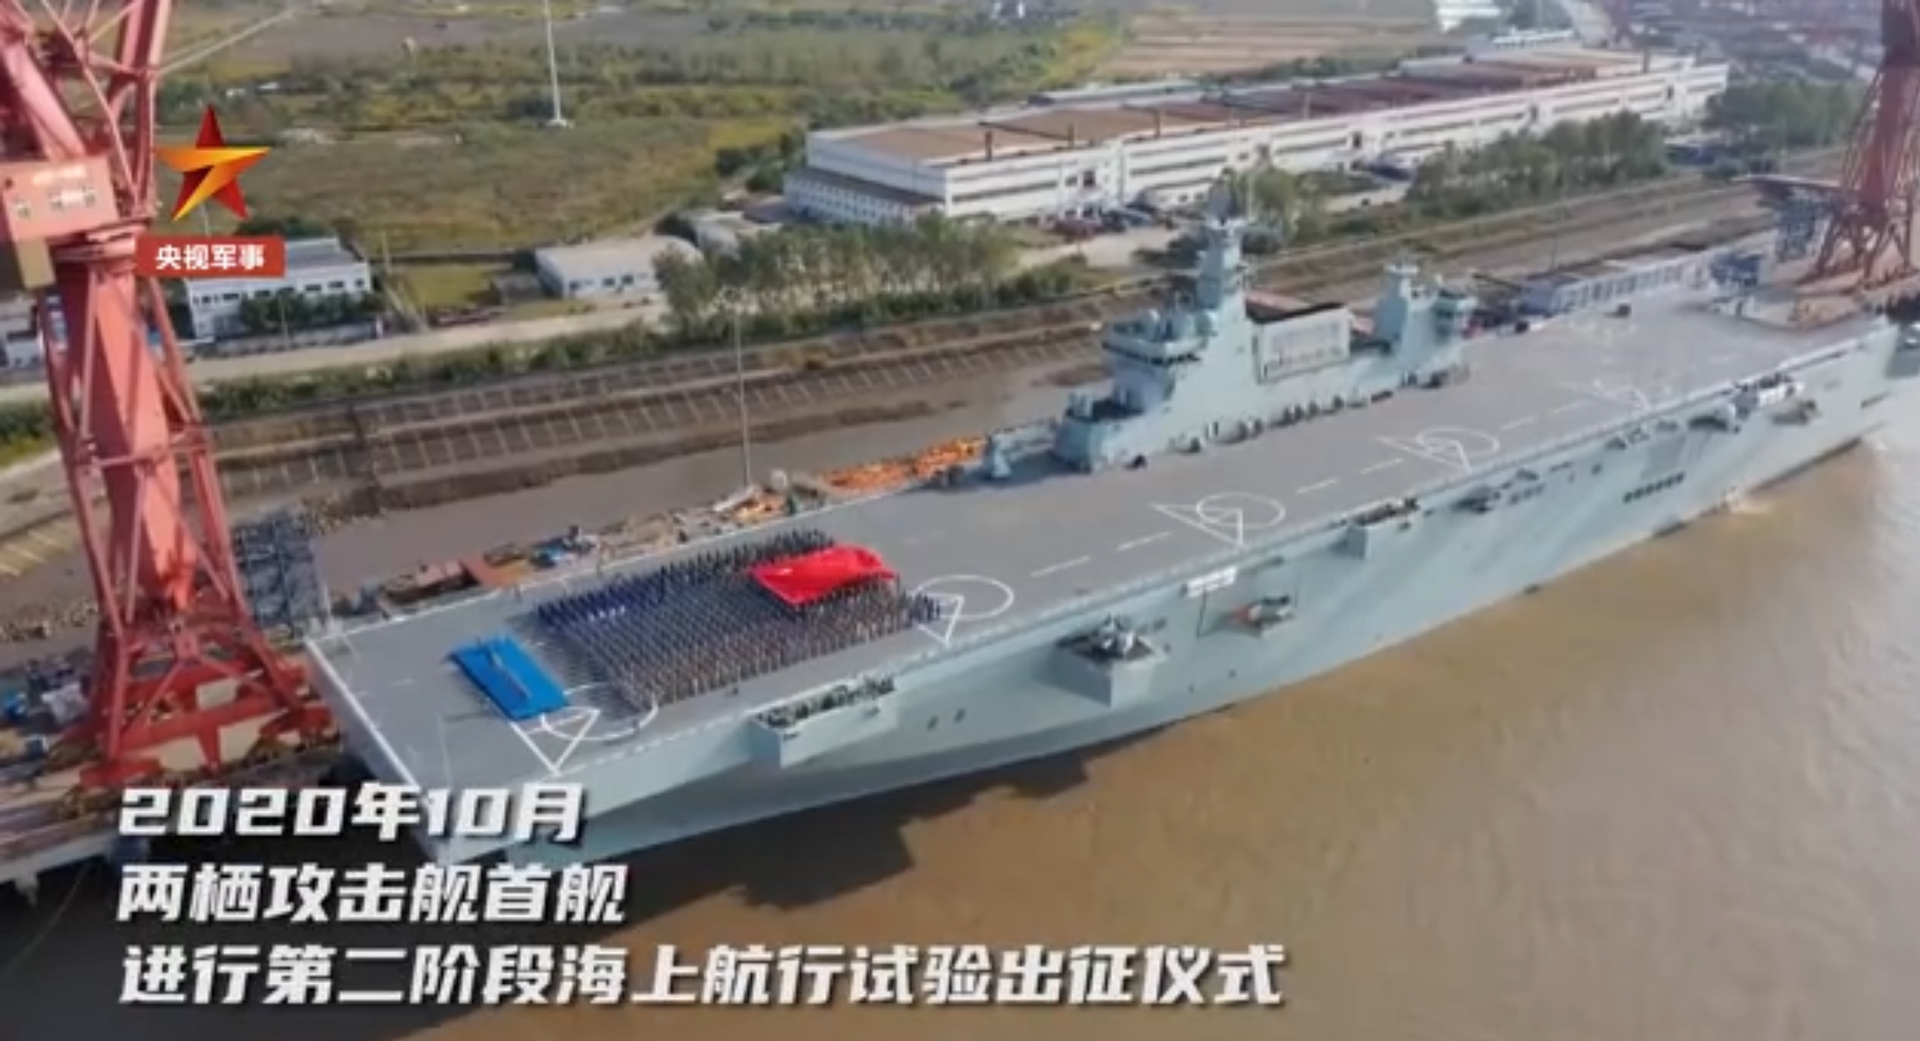 2020年10月，075型两栖攻击舰首舰进行第二阶段海上航行试验出征仪式。（中国央视军事频道视频截图）